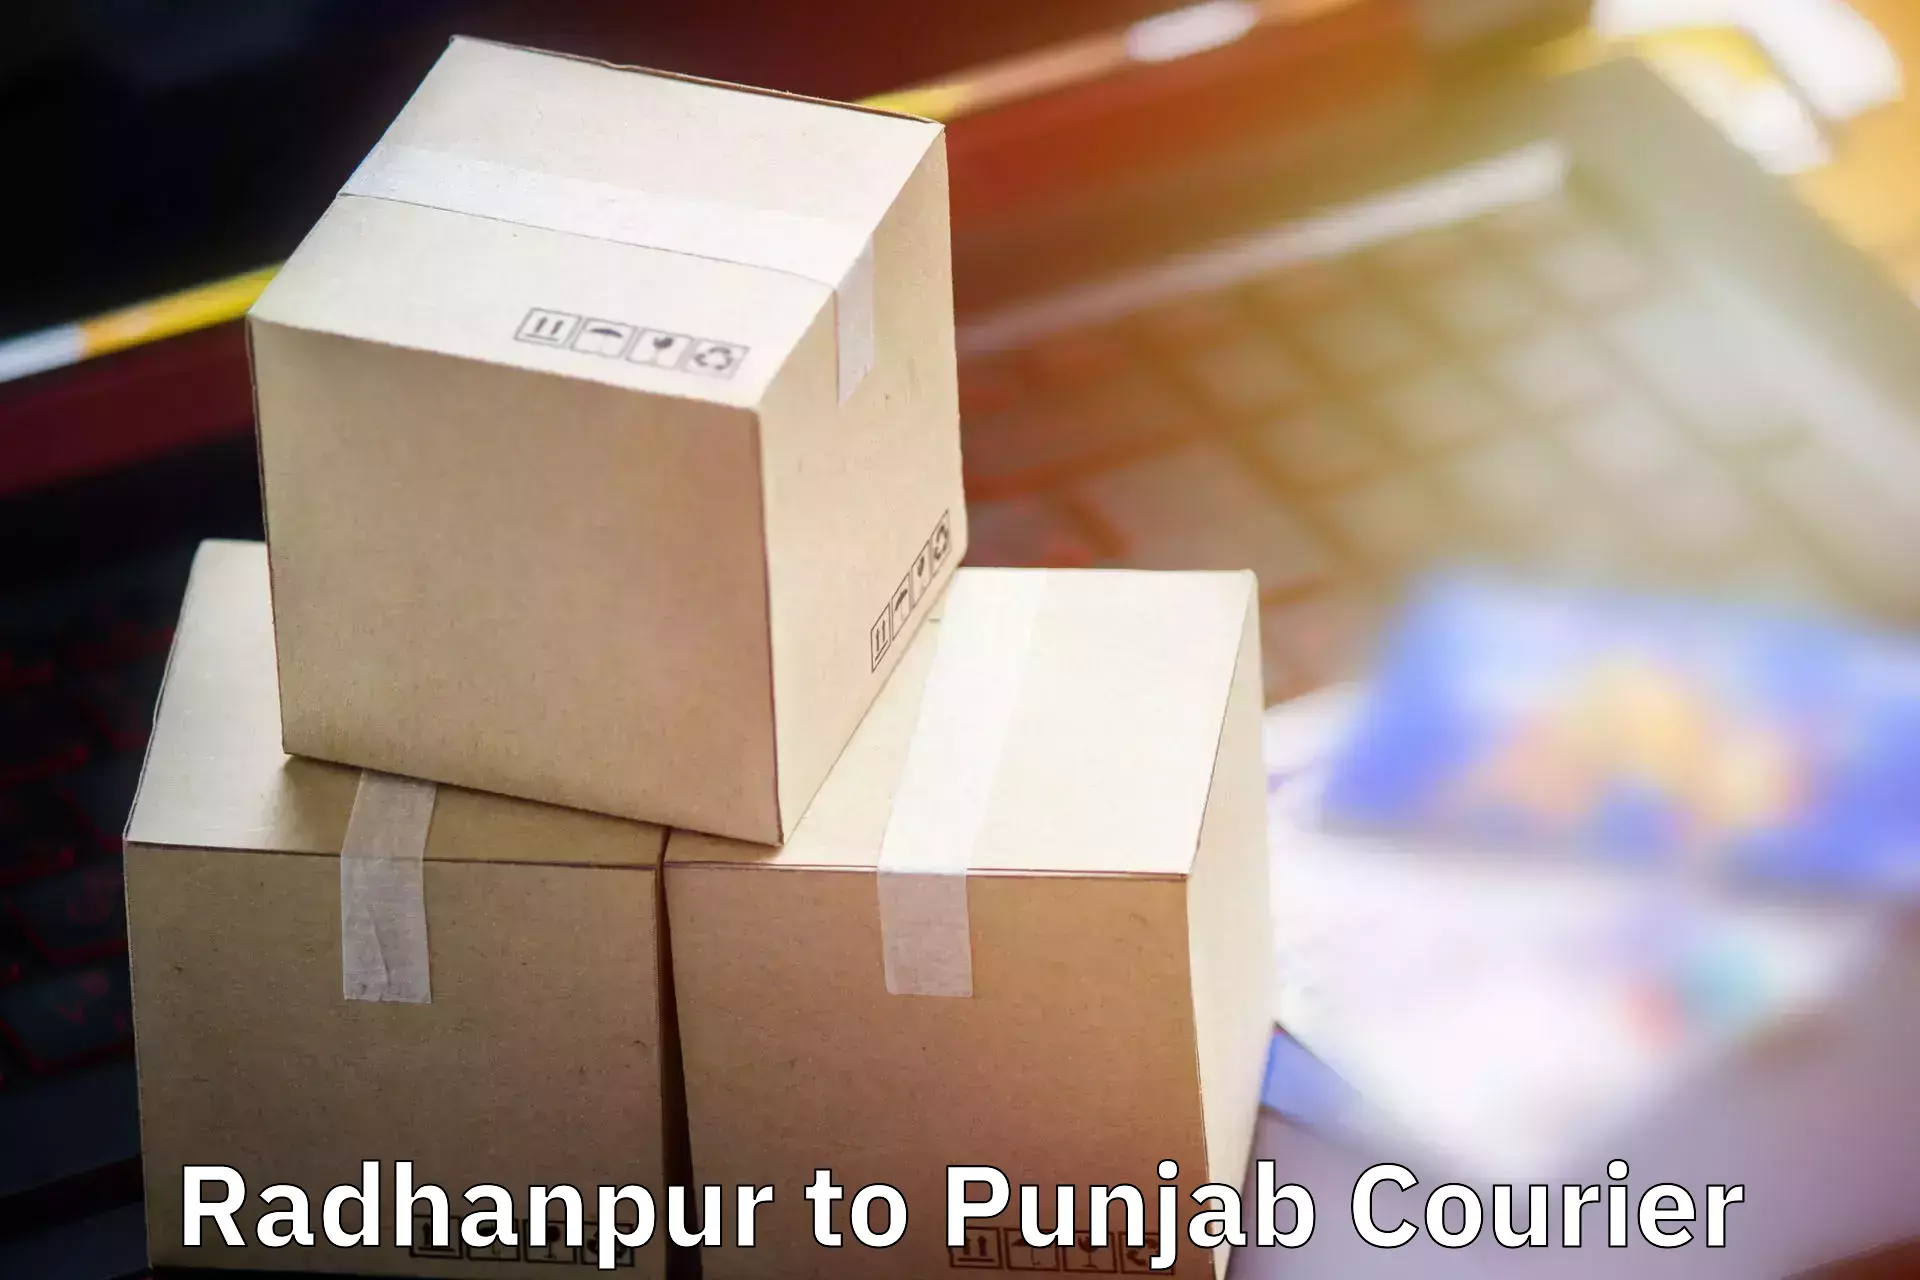 Baggage shipping quotes Radhanpur to Punjab